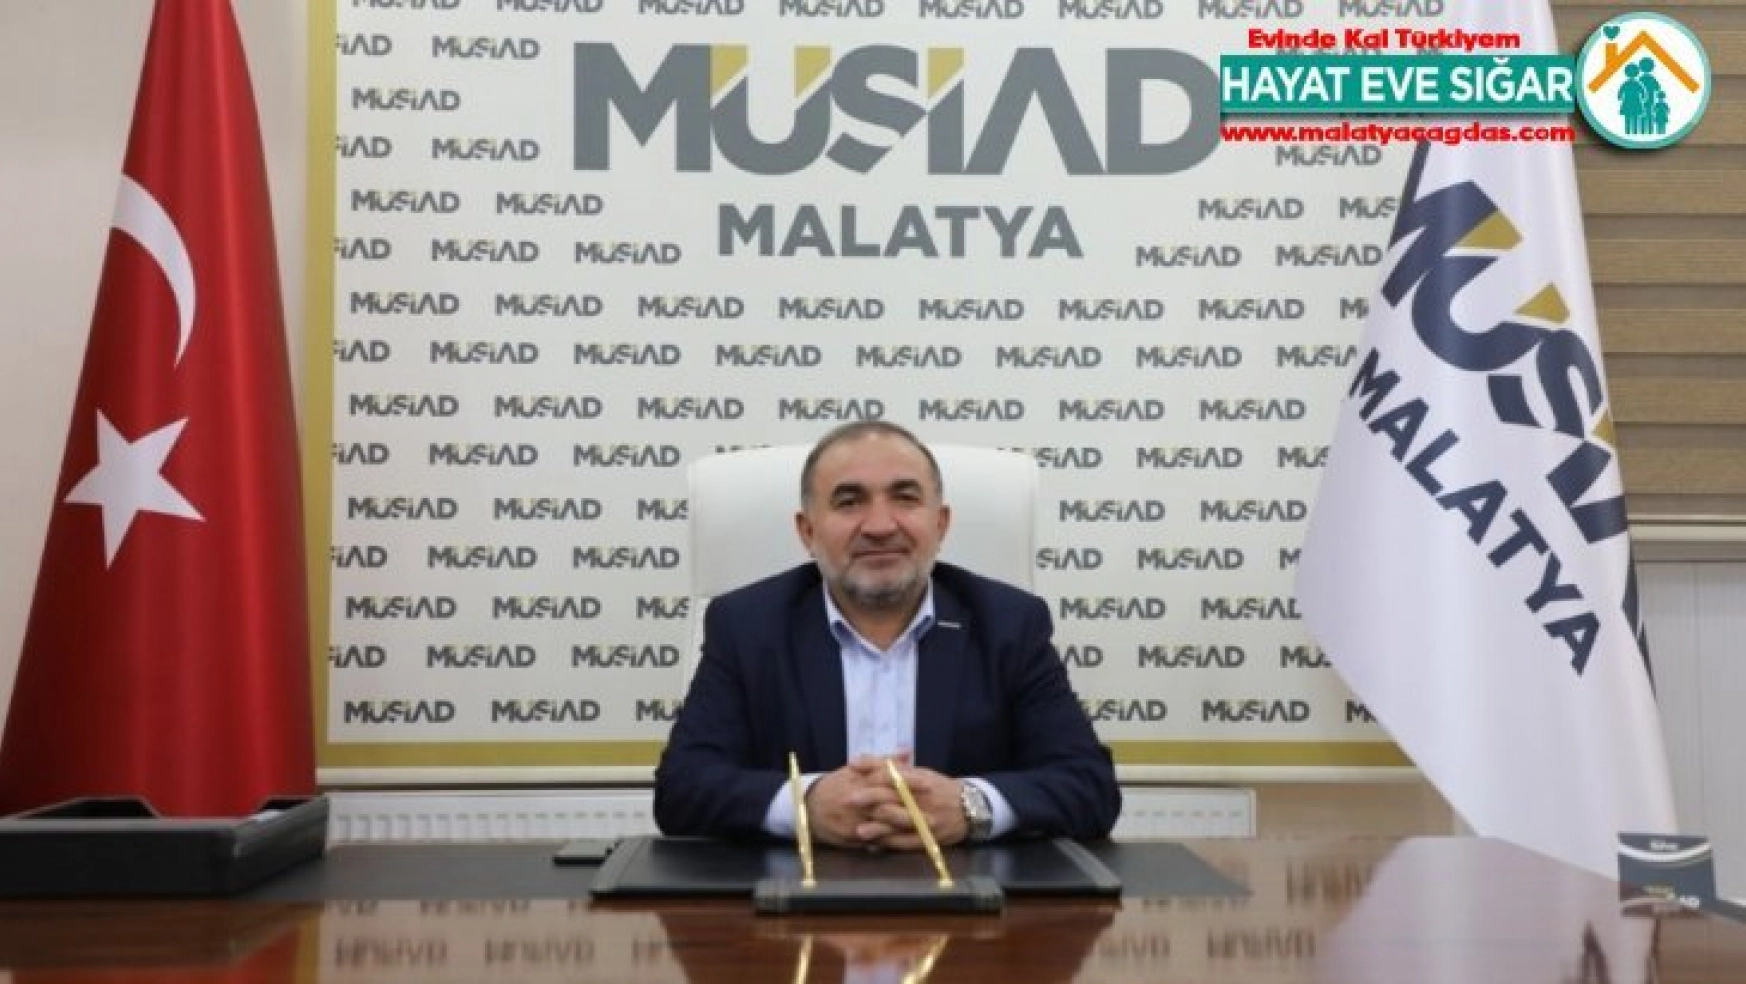 MÜSİAD Malatya Başkanı Muharrem Poyraz: